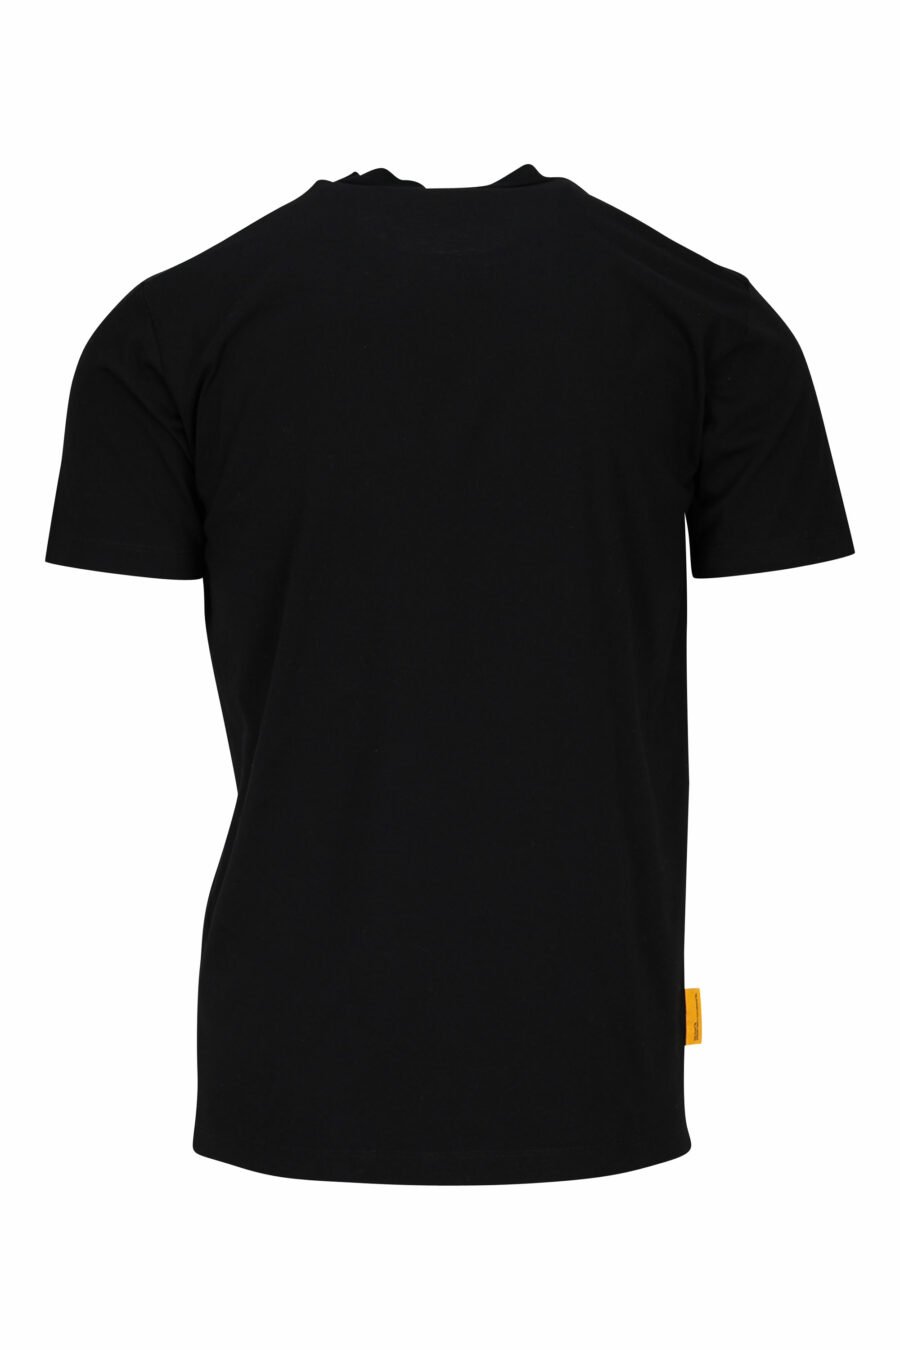 Camiseta negra con maxilogo fantasma "pac-man" - 8054148203801 1